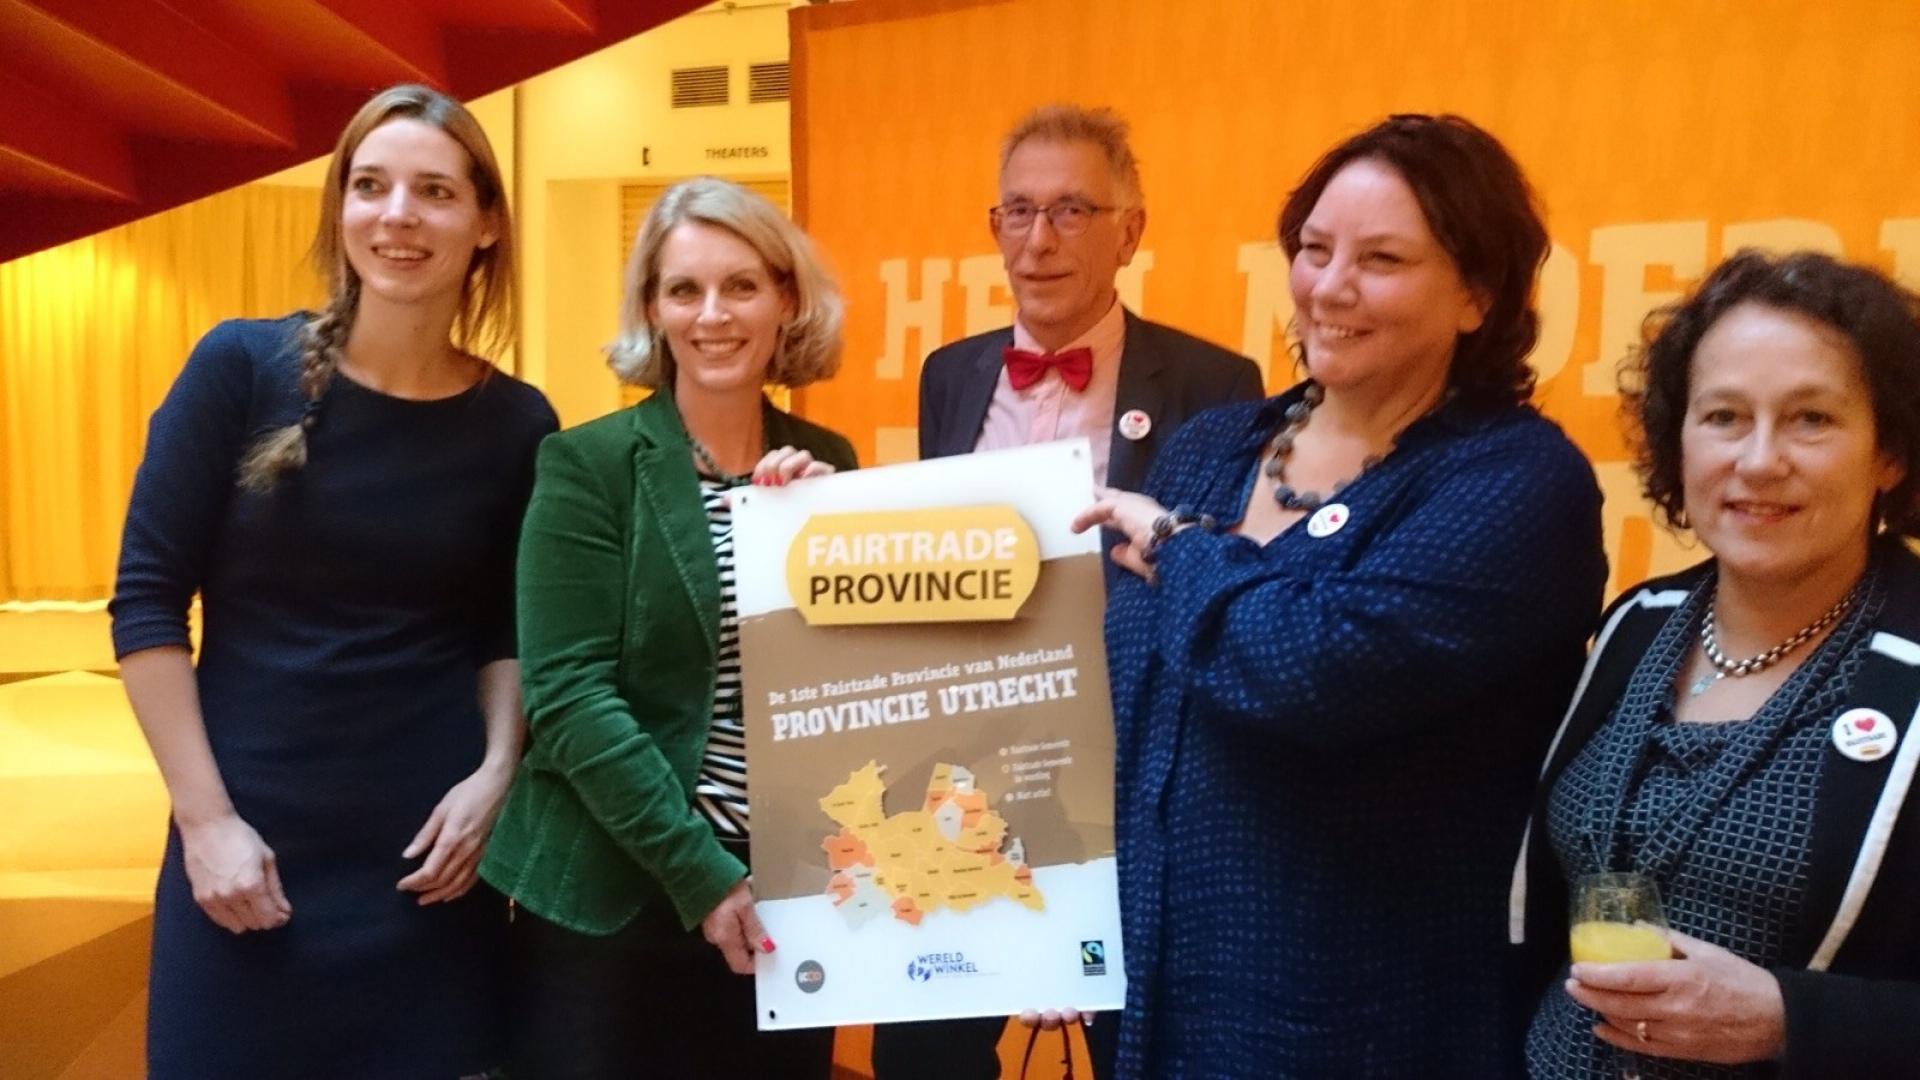 Fairtrade Provincie Utrecht